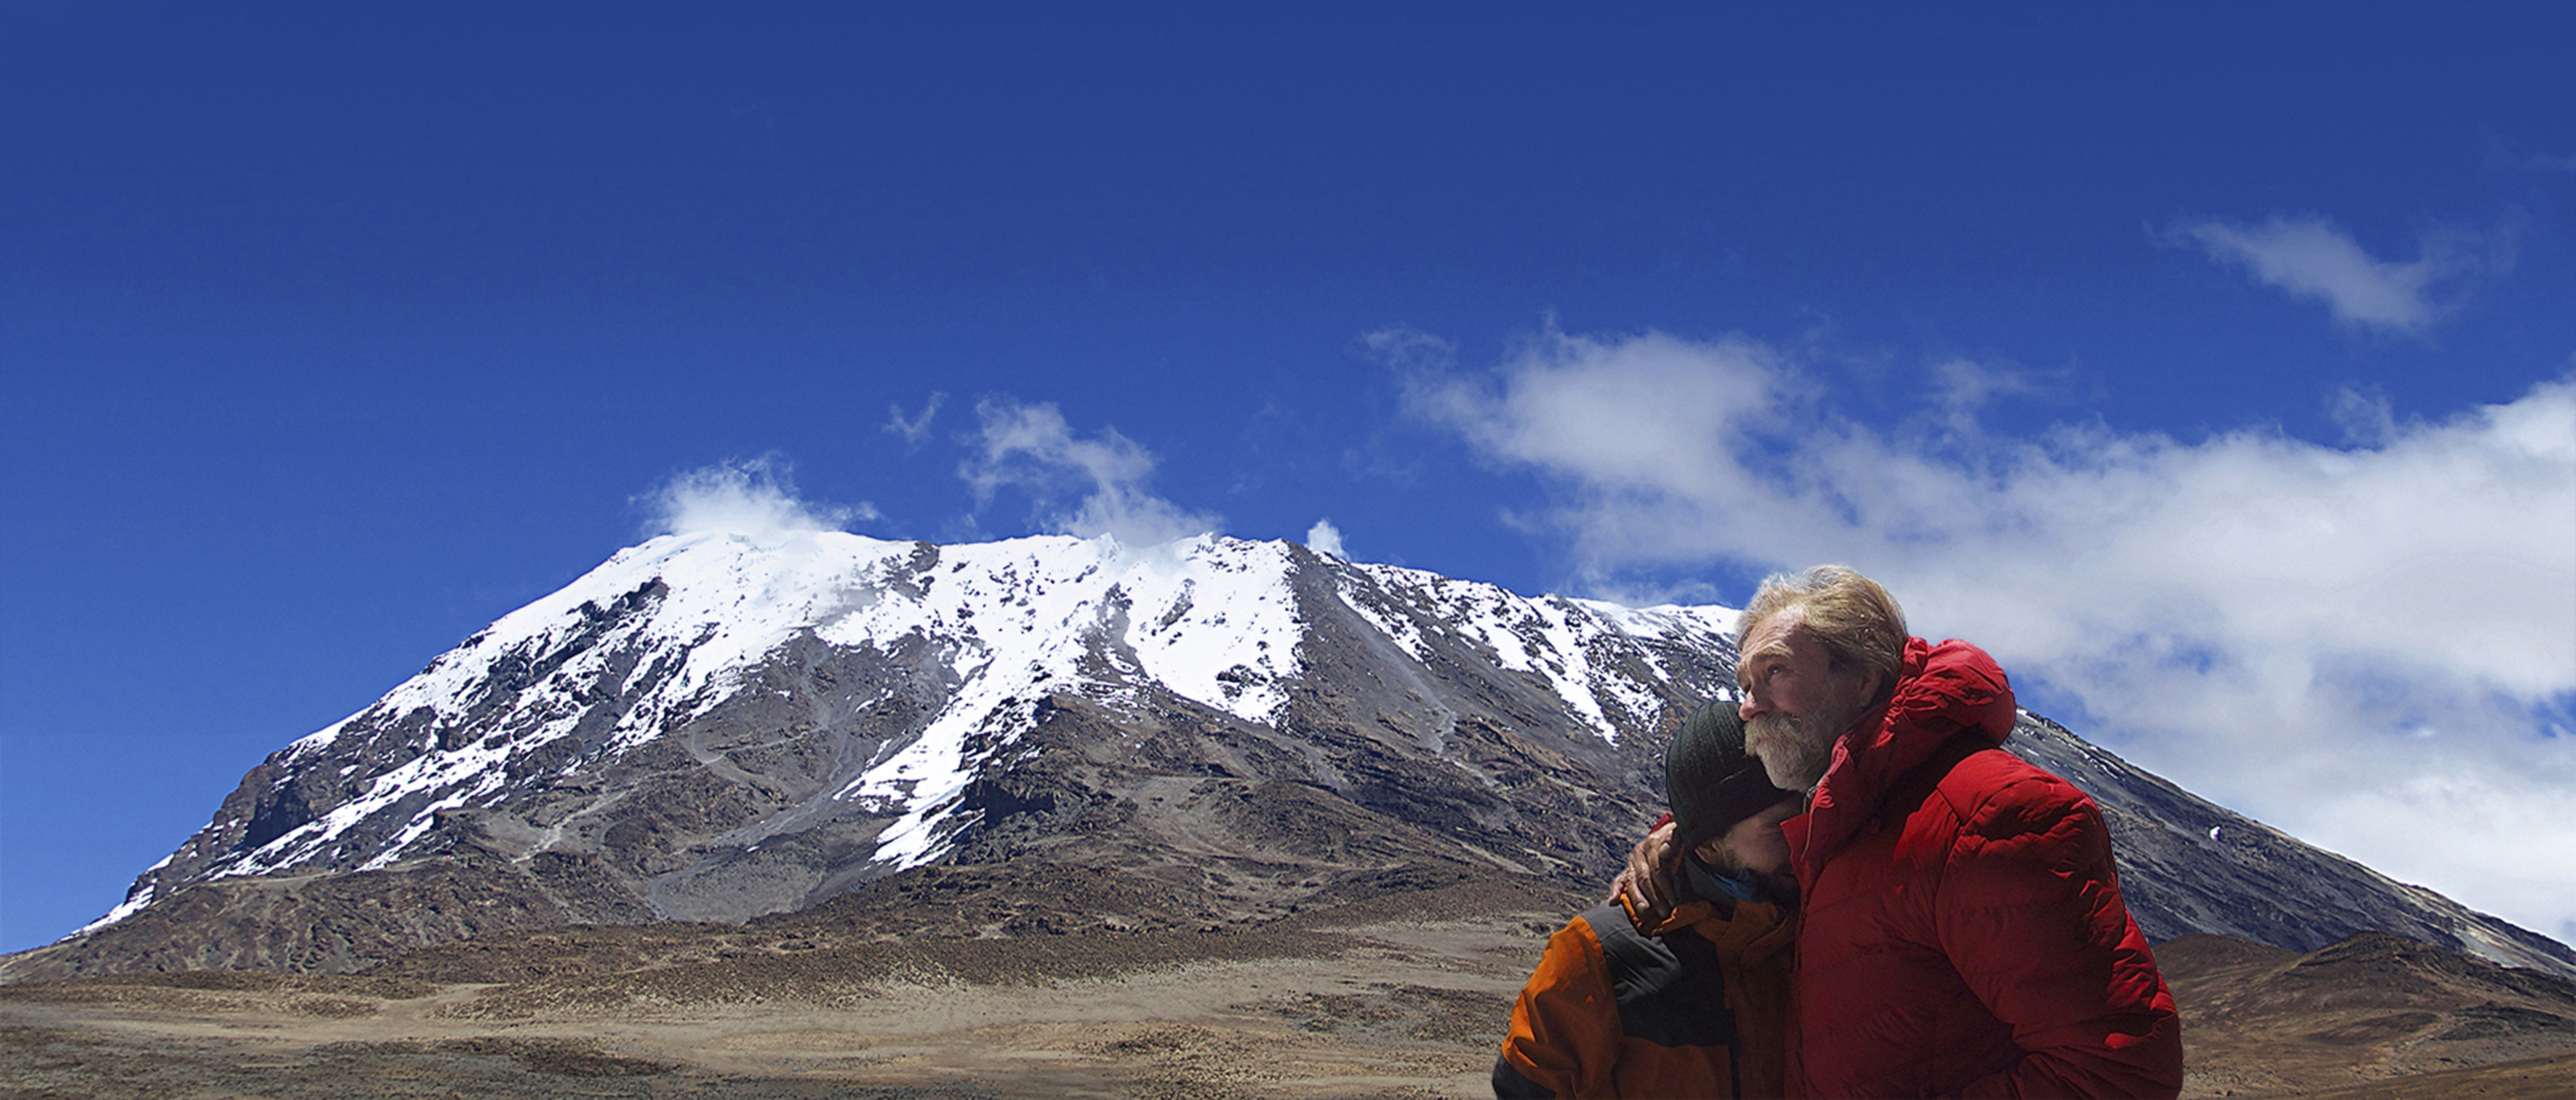 Preview Image: Mein Vater, mein Sohn und der Kilimandscharo